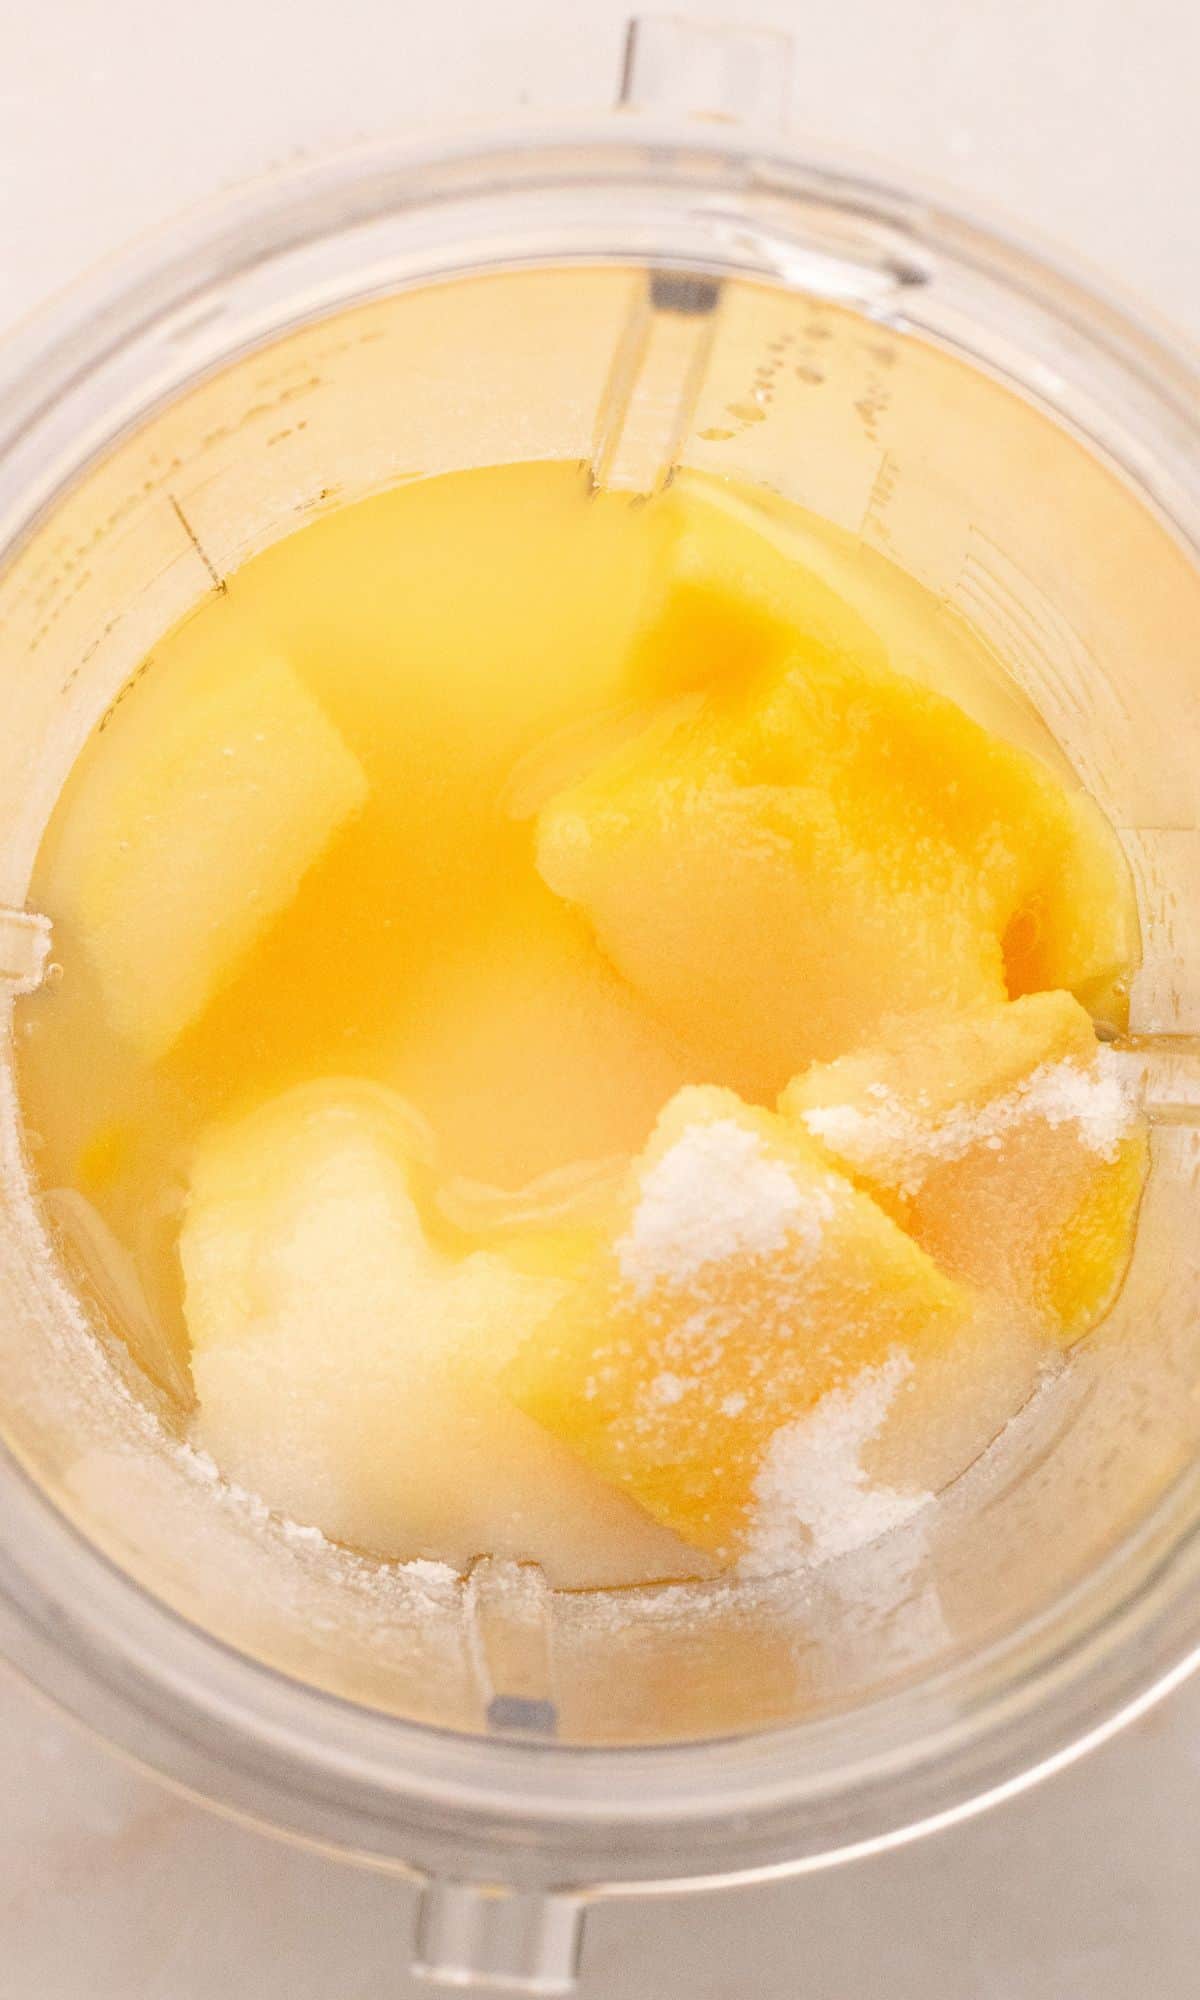 Mango puree ingredients in blender.